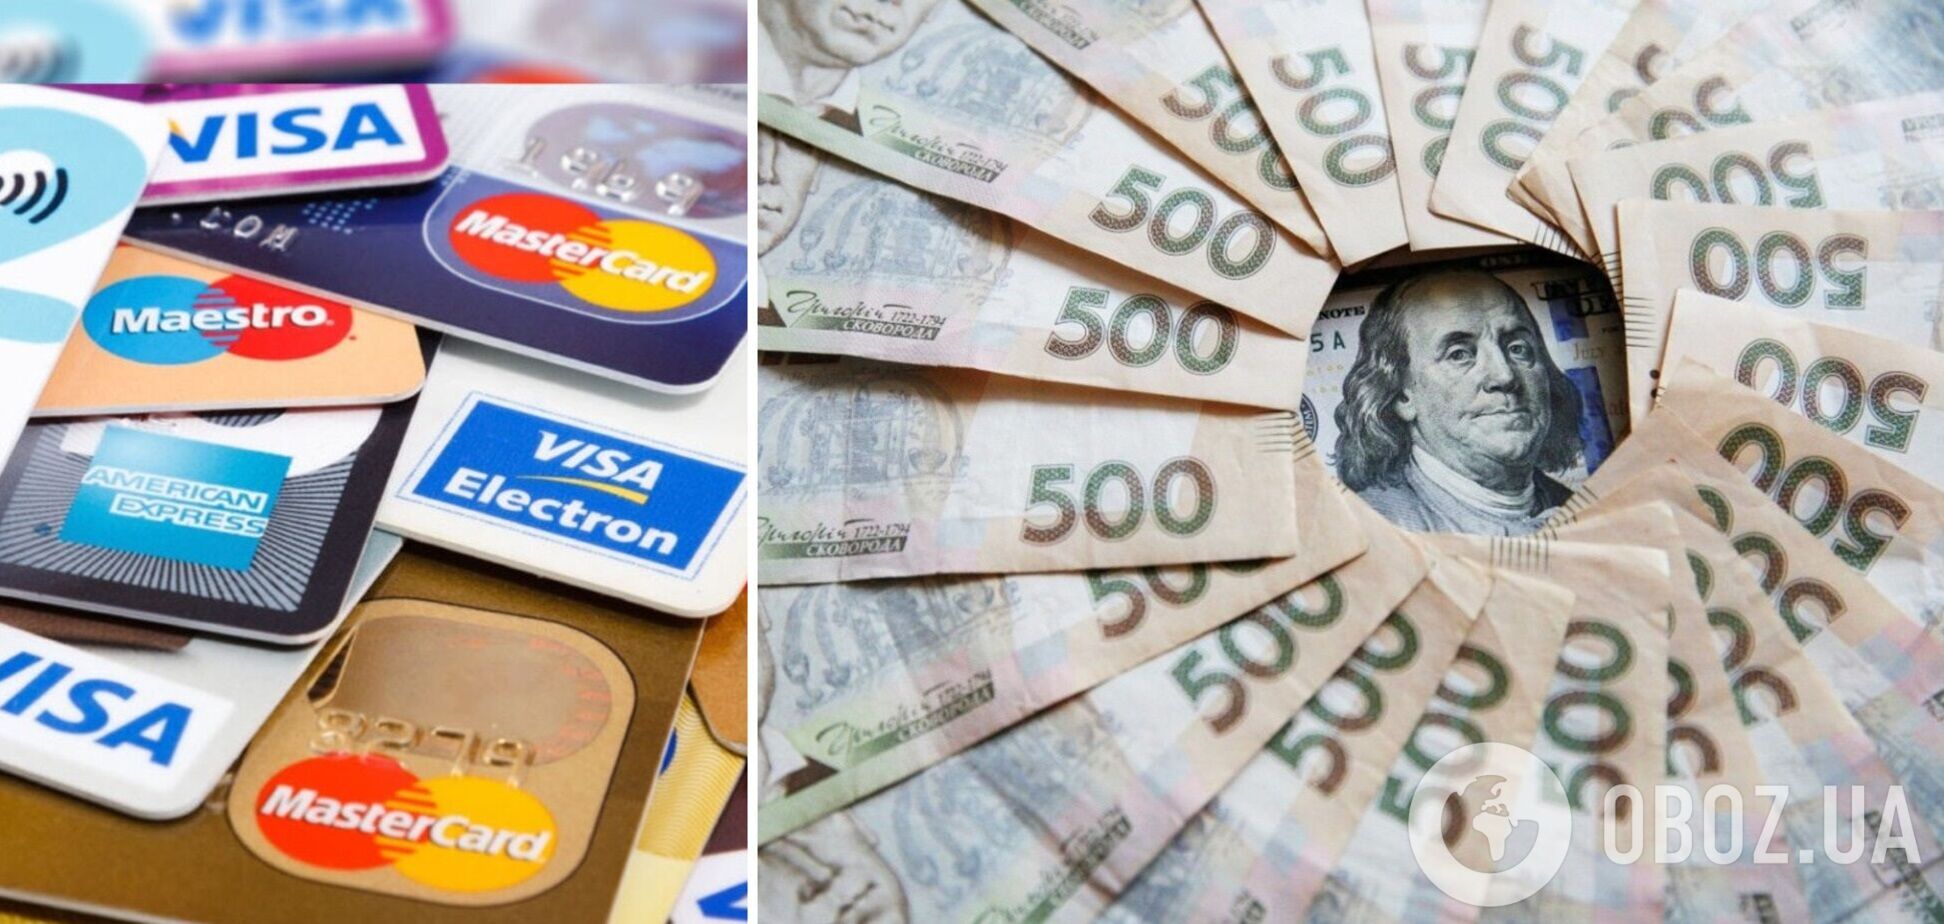  Вклады украинцев в банках за месяц увеличились почти на 12 миллиардов